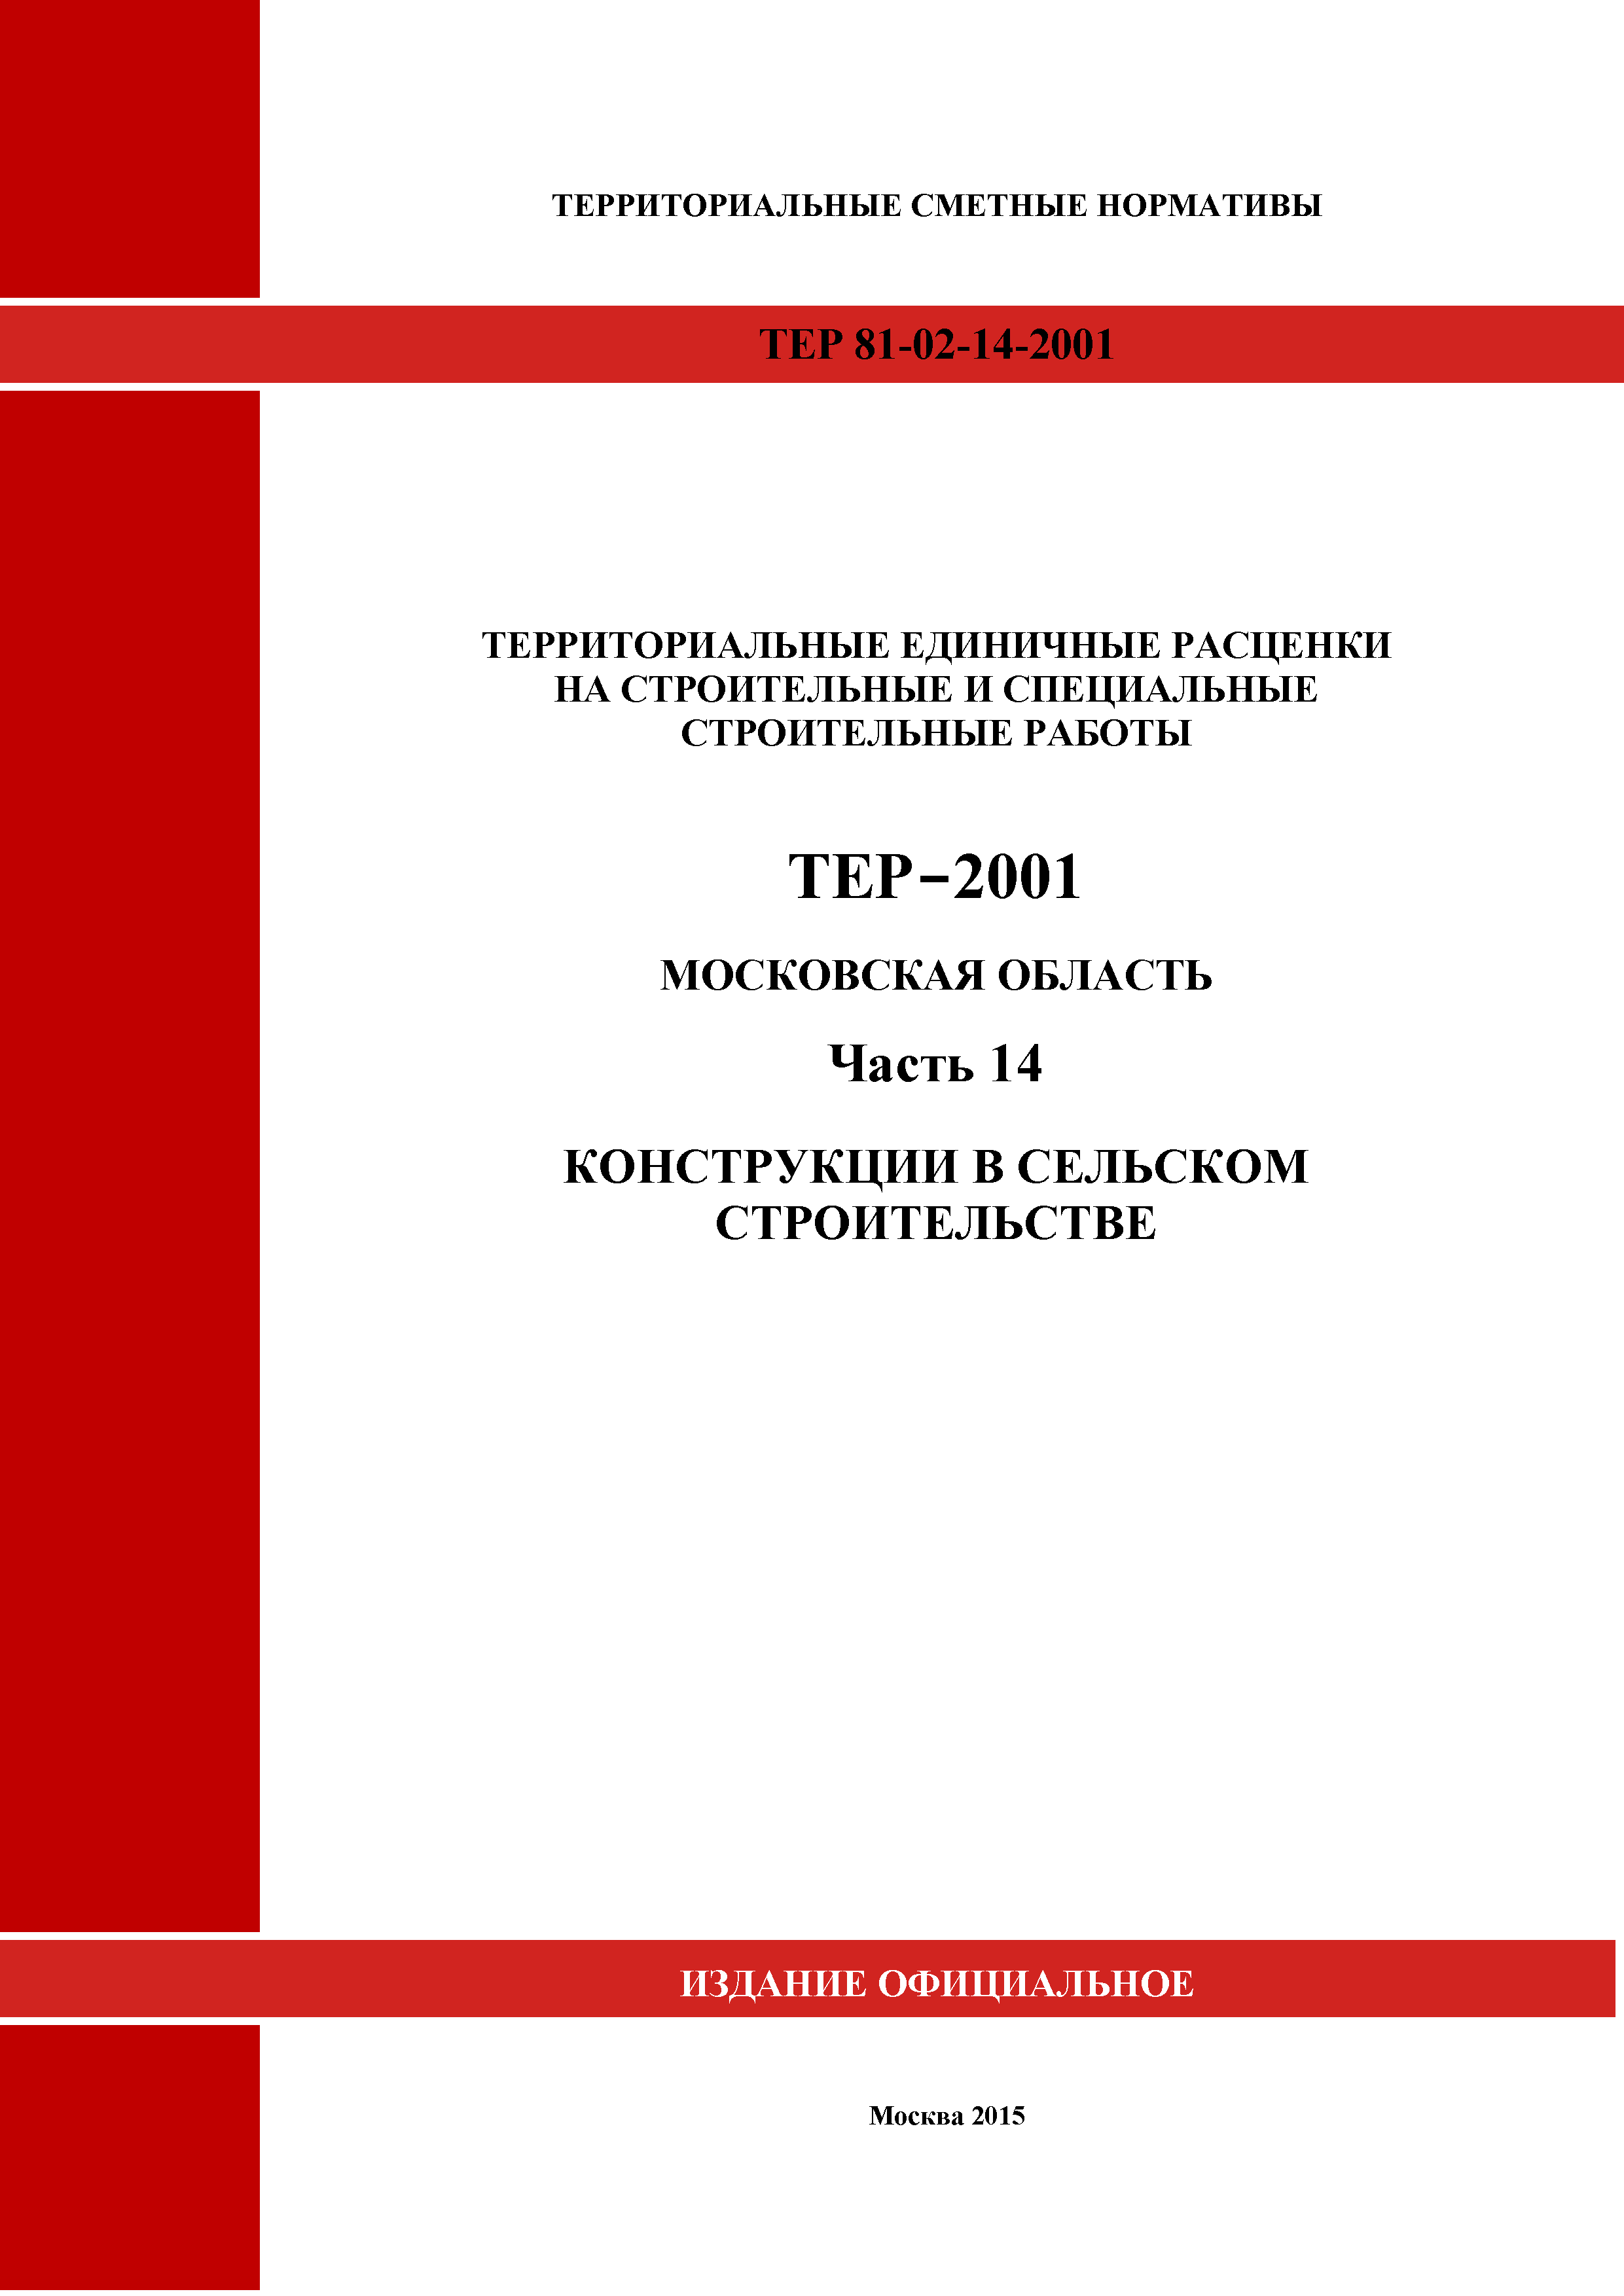 ТЕР 14-2001 Московской области